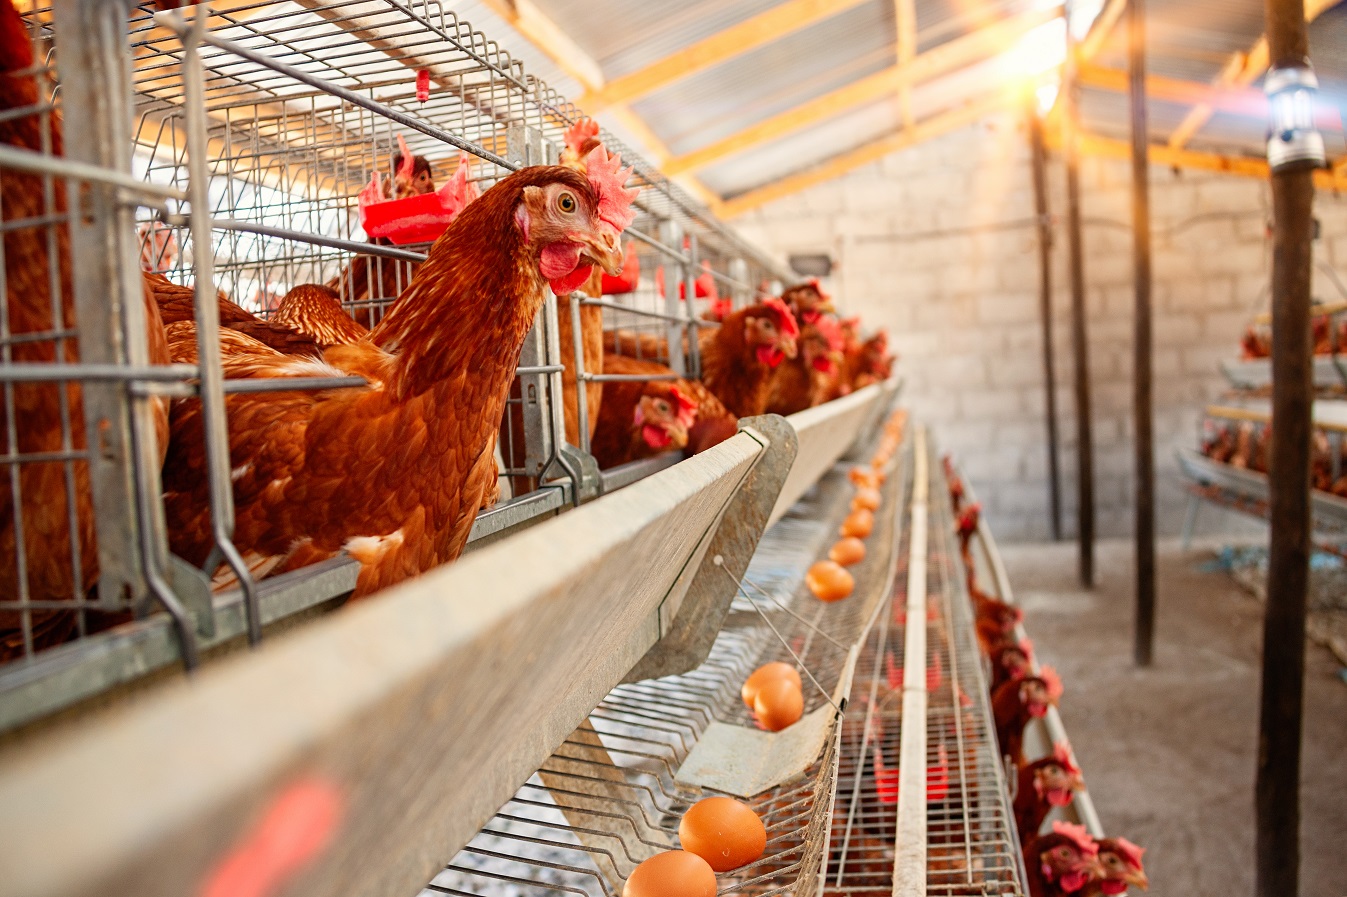 Santé des volailles, environnement et équipement des élevages avicoles